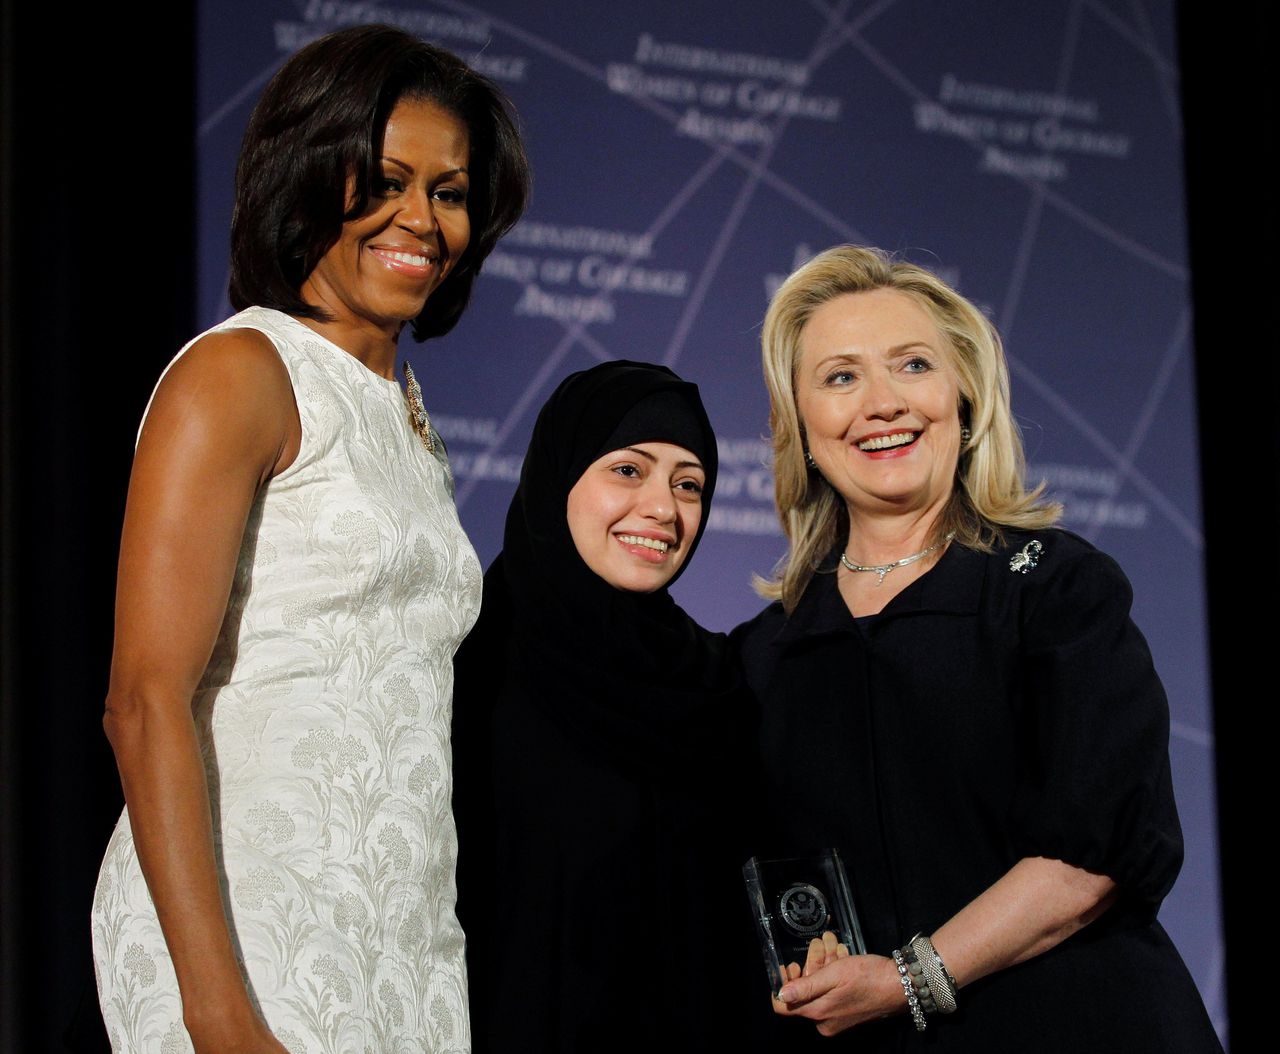 Hillary Clinton en Michelle Obama feliciteren Samar Badawi tijdens de uitreiking van de 'International Women of Courage Award' in 2012.